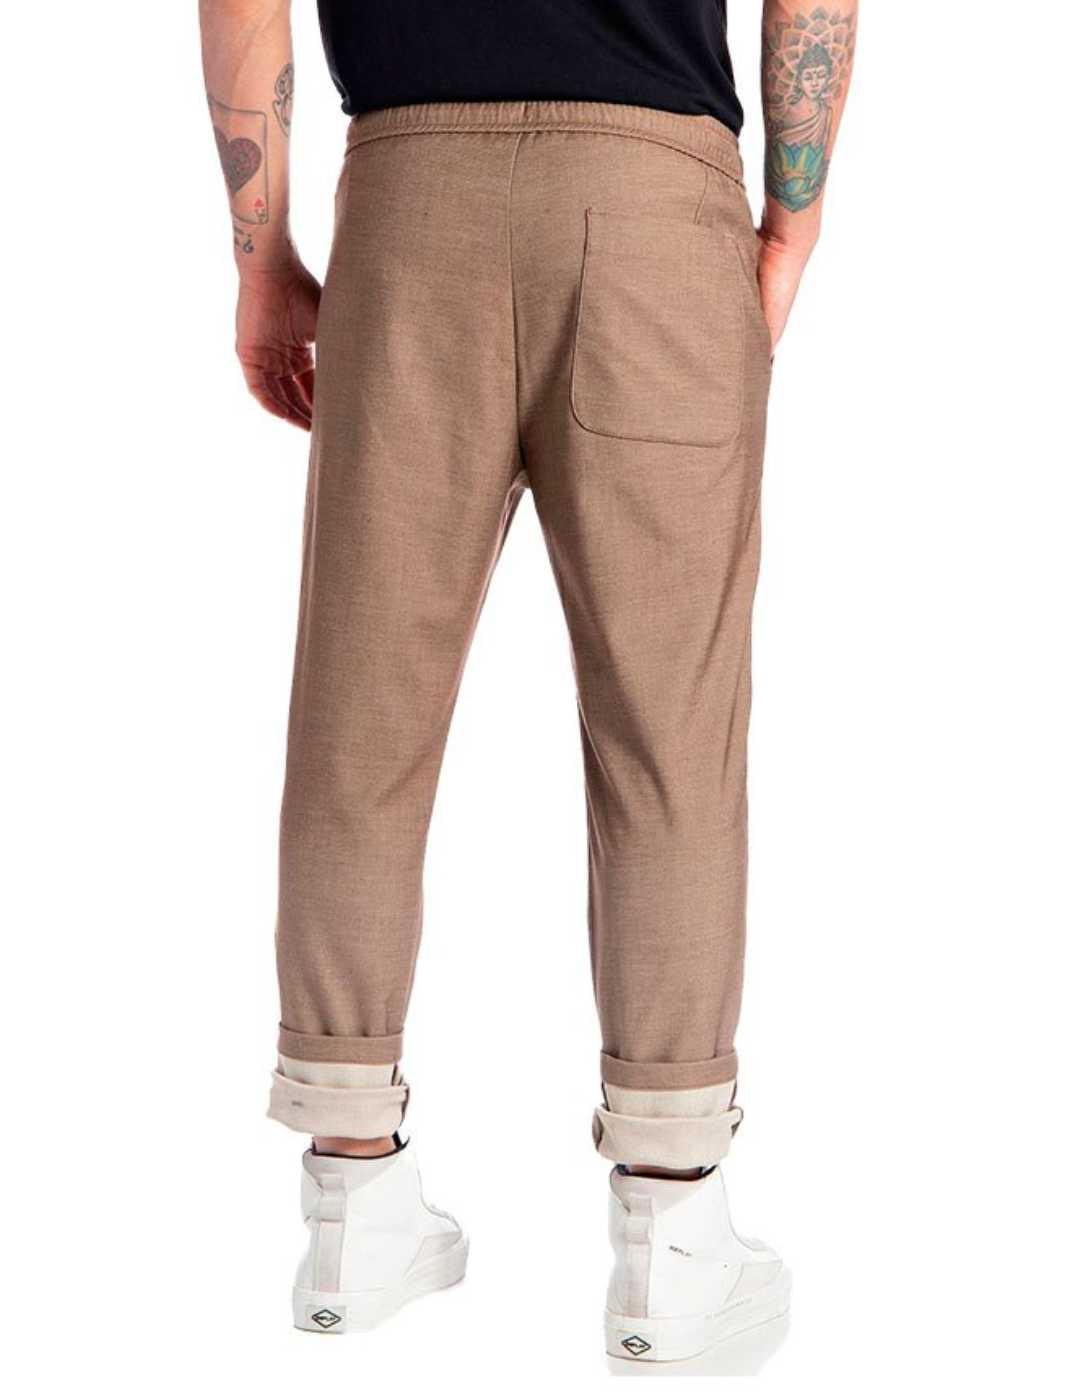 Pantalón Replay marrón casual para hombre